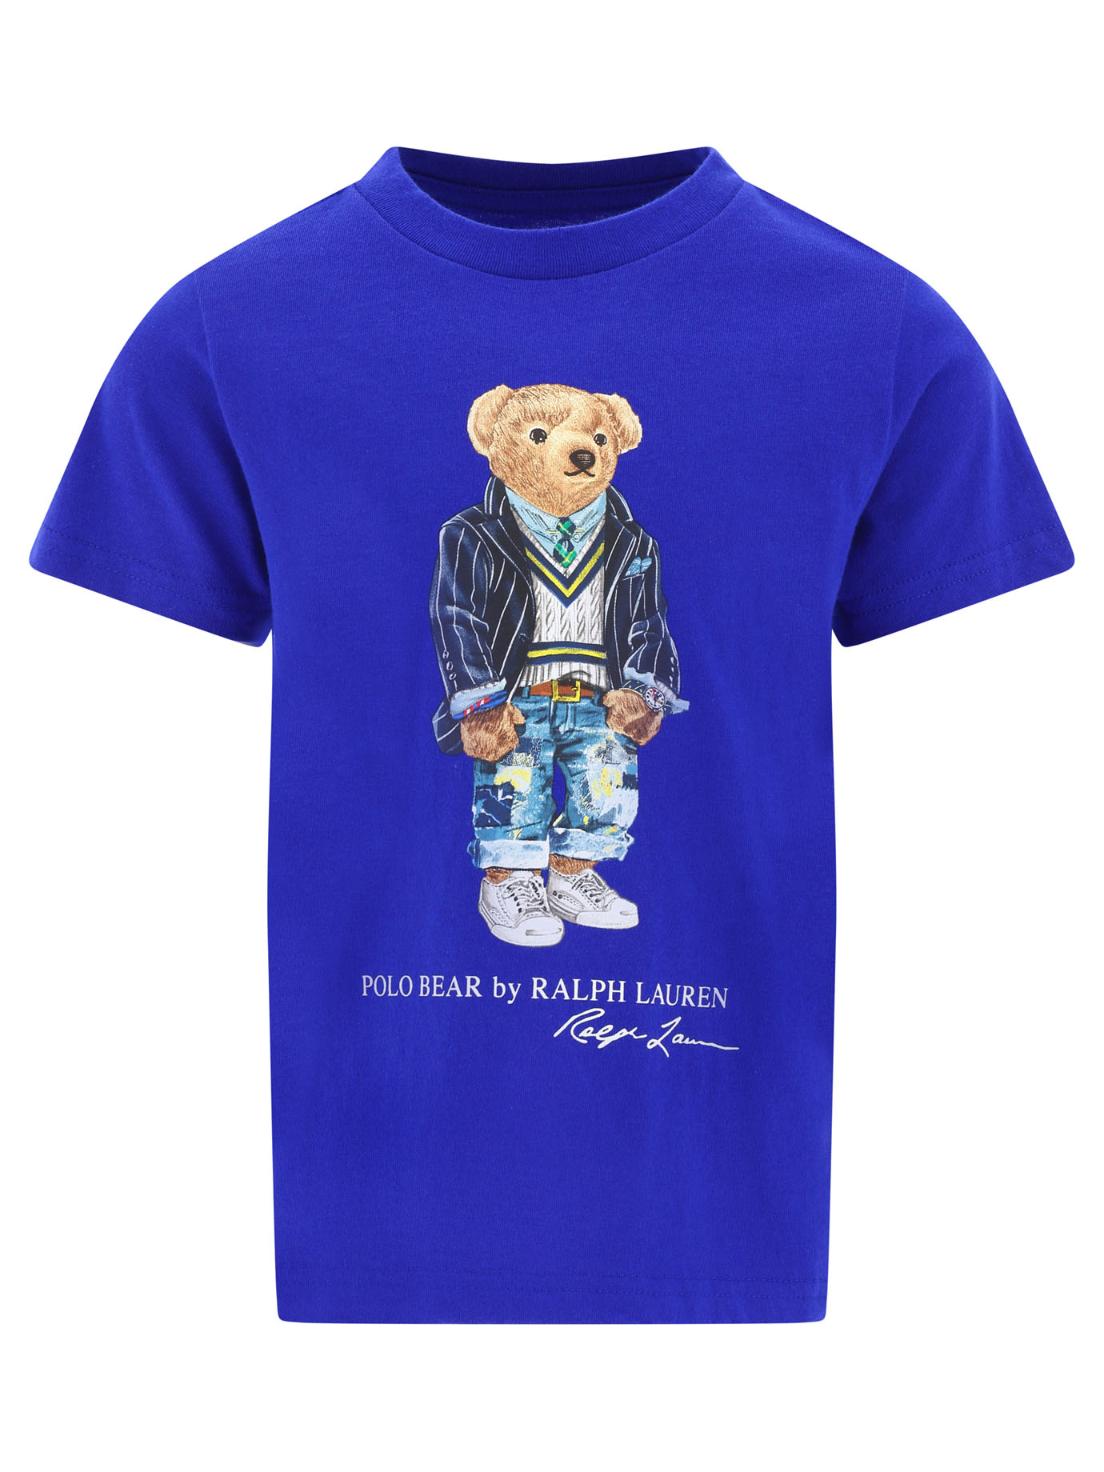 [해외직구 관부가세 포함] Ralph Lauren Kids 블루 "Polo Bear" t셔츠 865660-003HERITAGE ROYAL